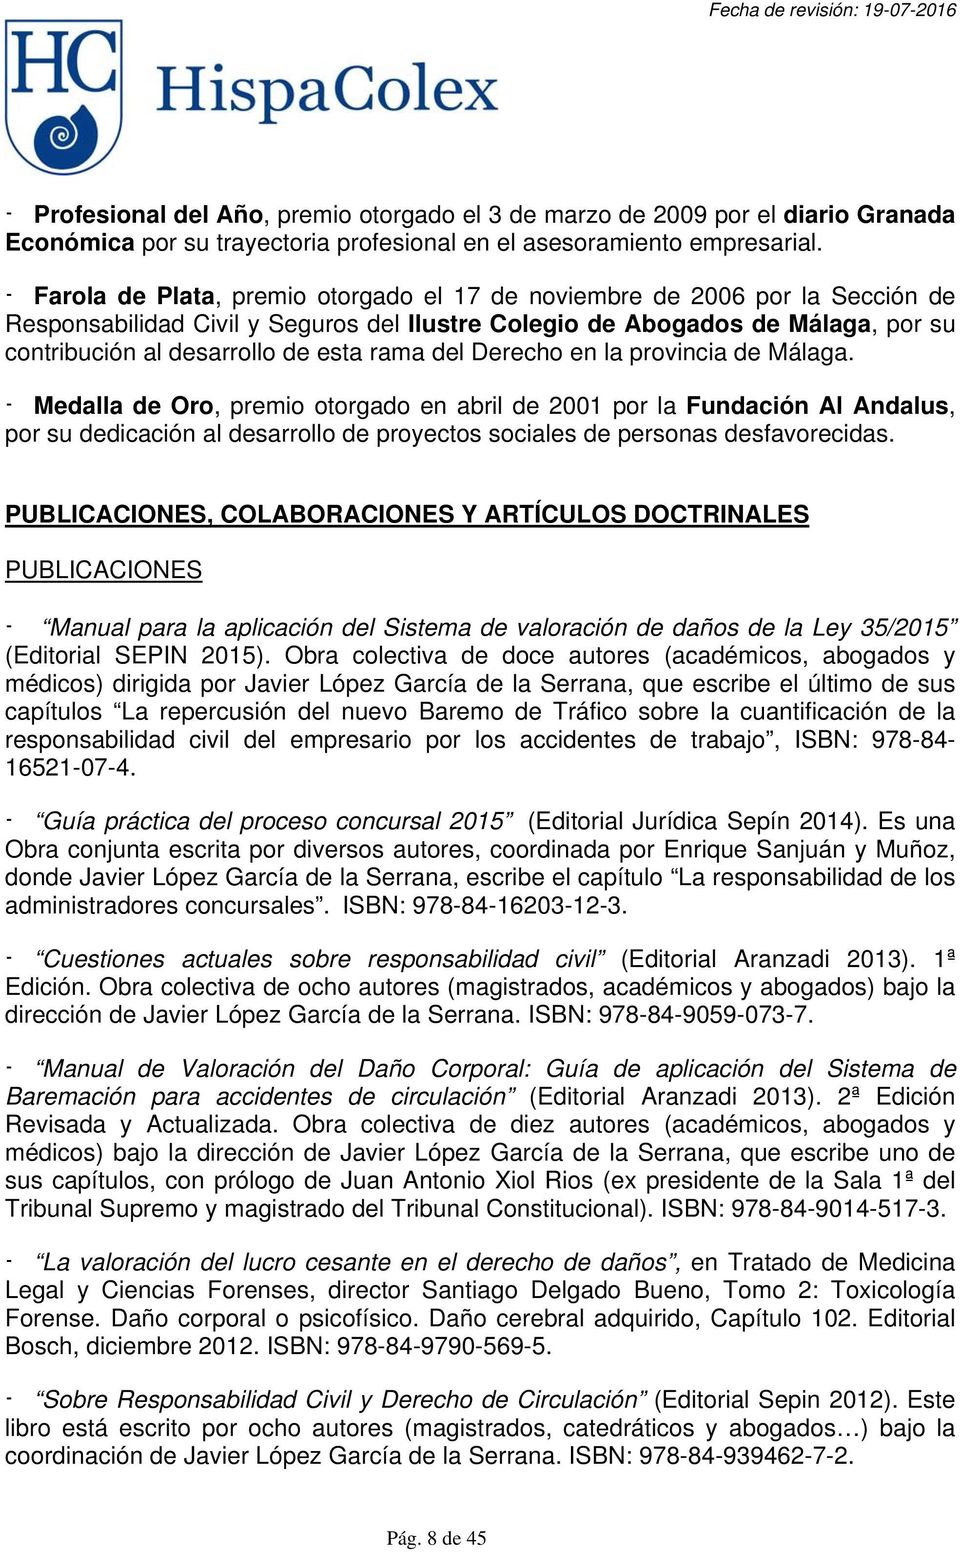 rama del Derecho en la provincia de Málaga.